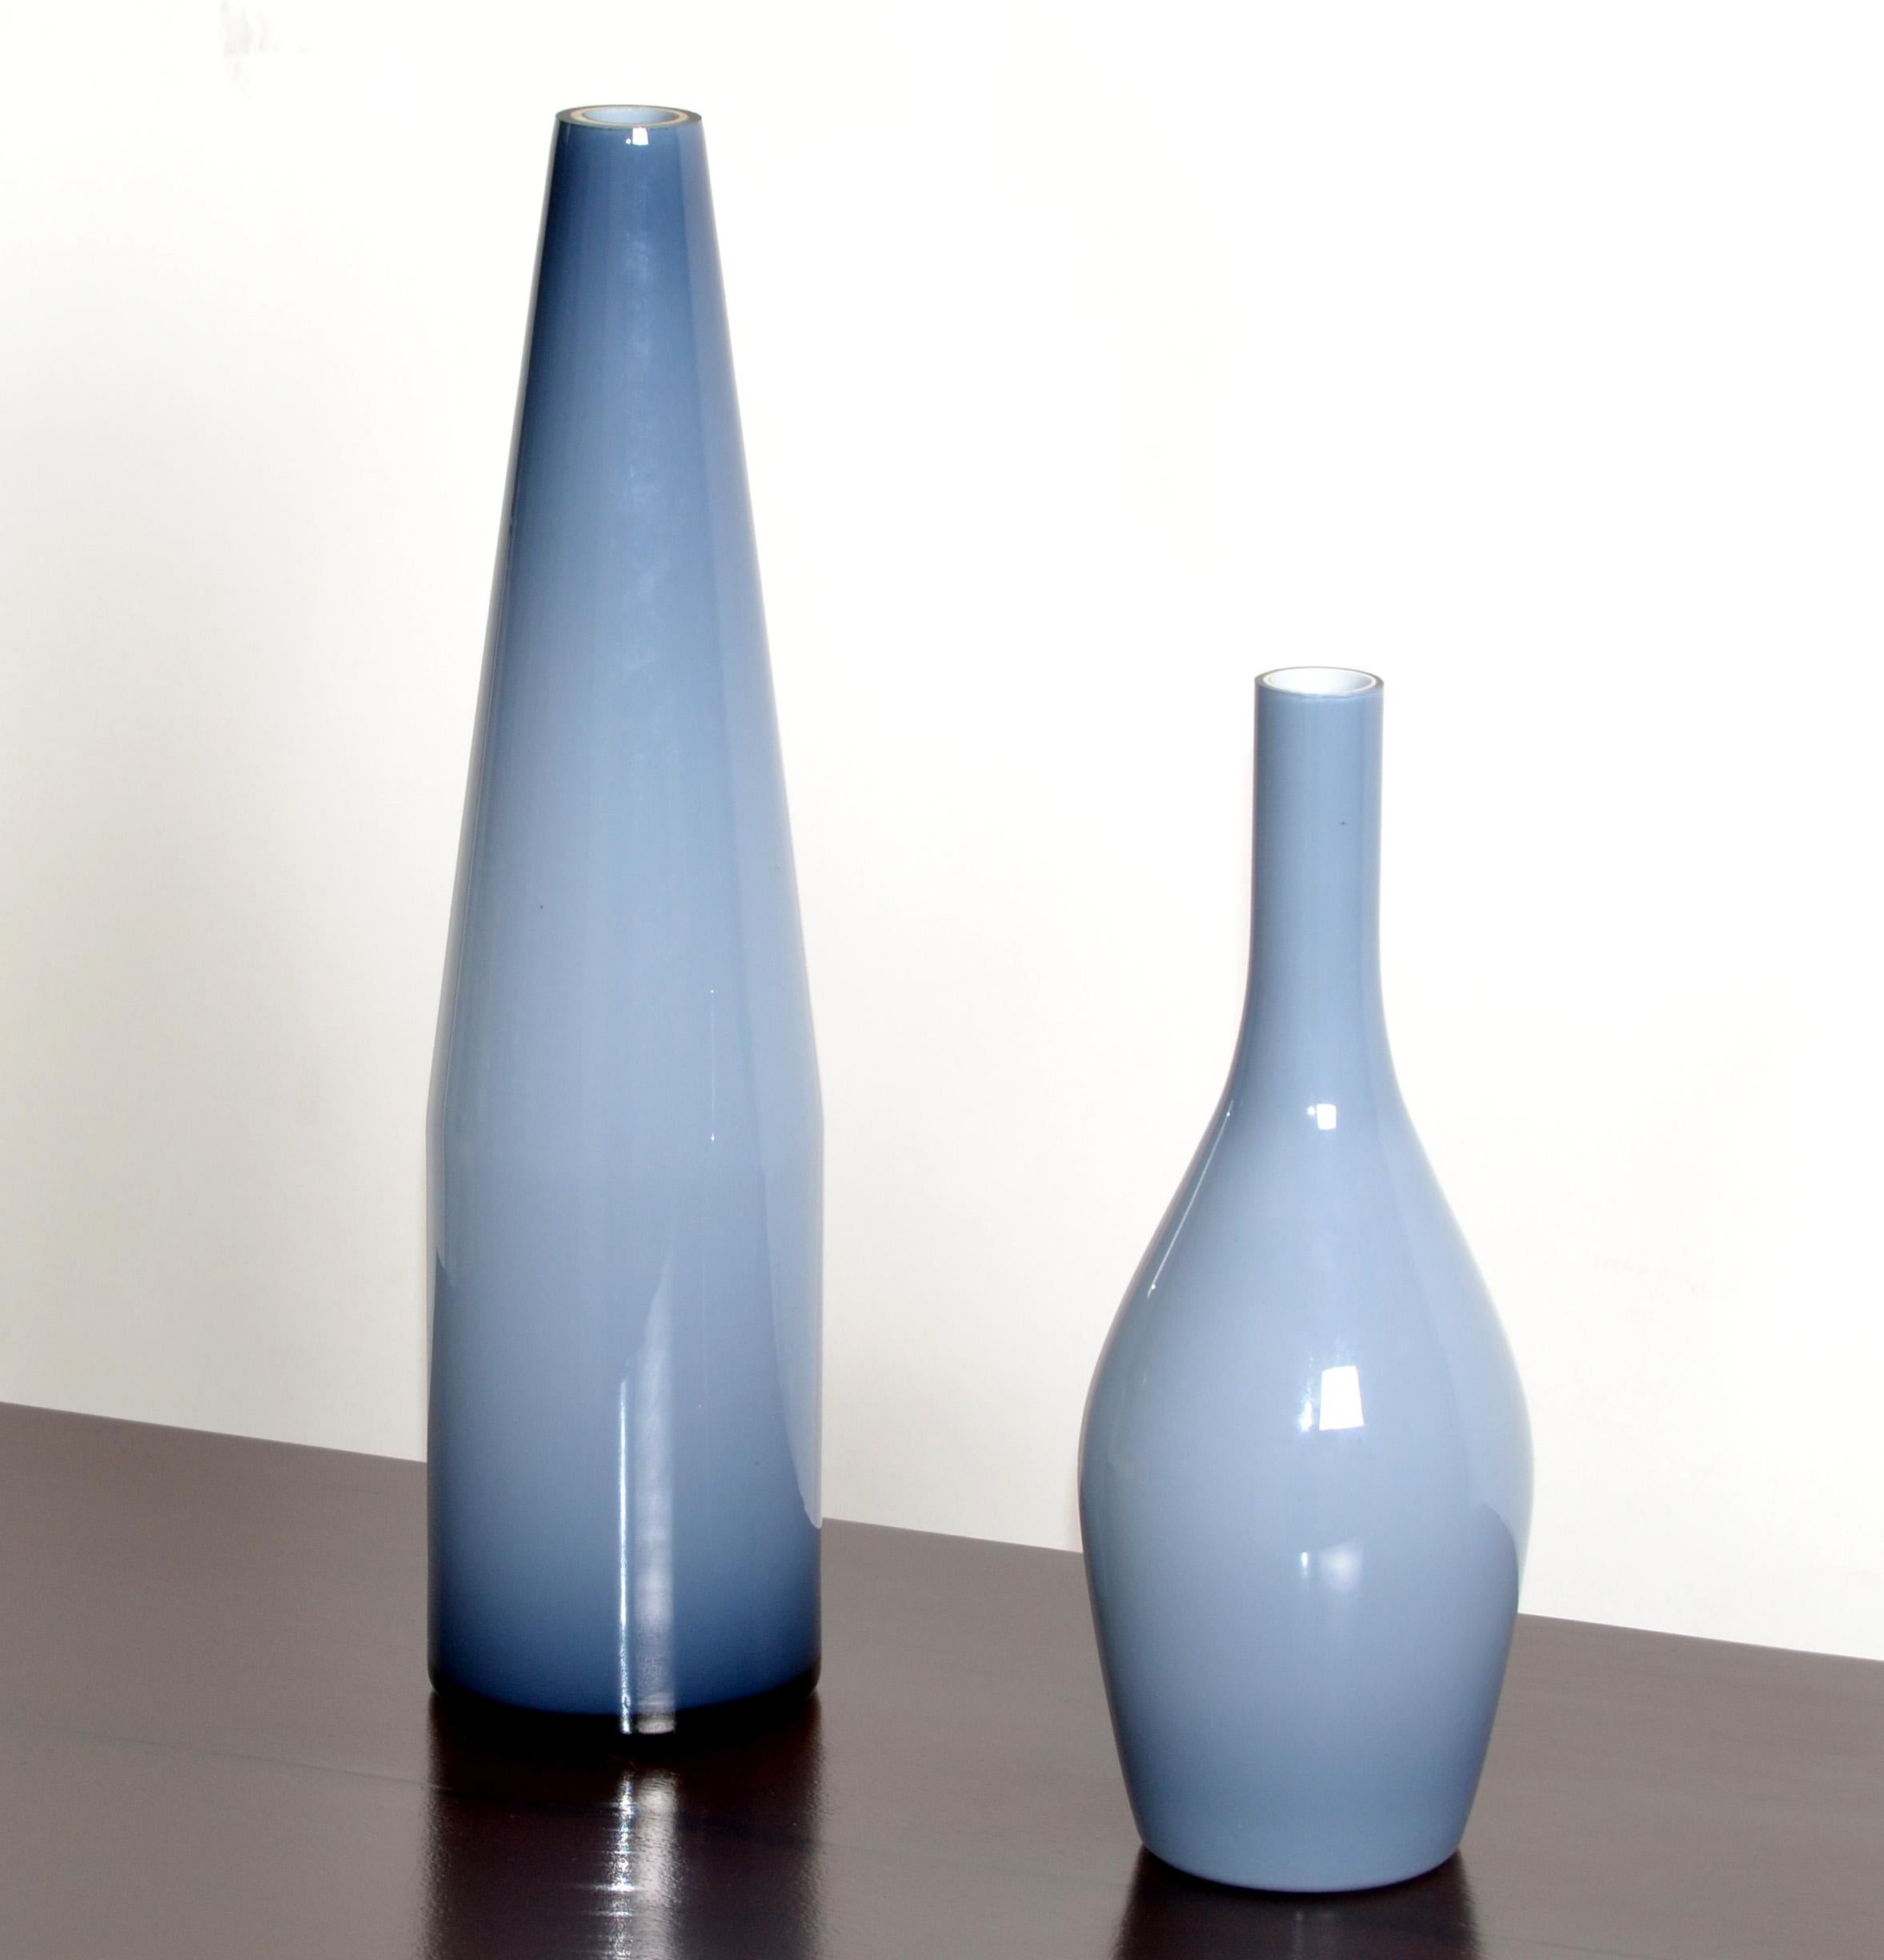 Satz von 2 Vasen aus mundgeblasenem Muranoglas von Carlo Moretti in Blau und Weiß, hergestellt von Raymor in den 1980er Jahren und in Italien.
Jede Vase ist auf der Unterseite mit einem Etikett versehen und nummeriert.
Das kleinere Gefäß misst